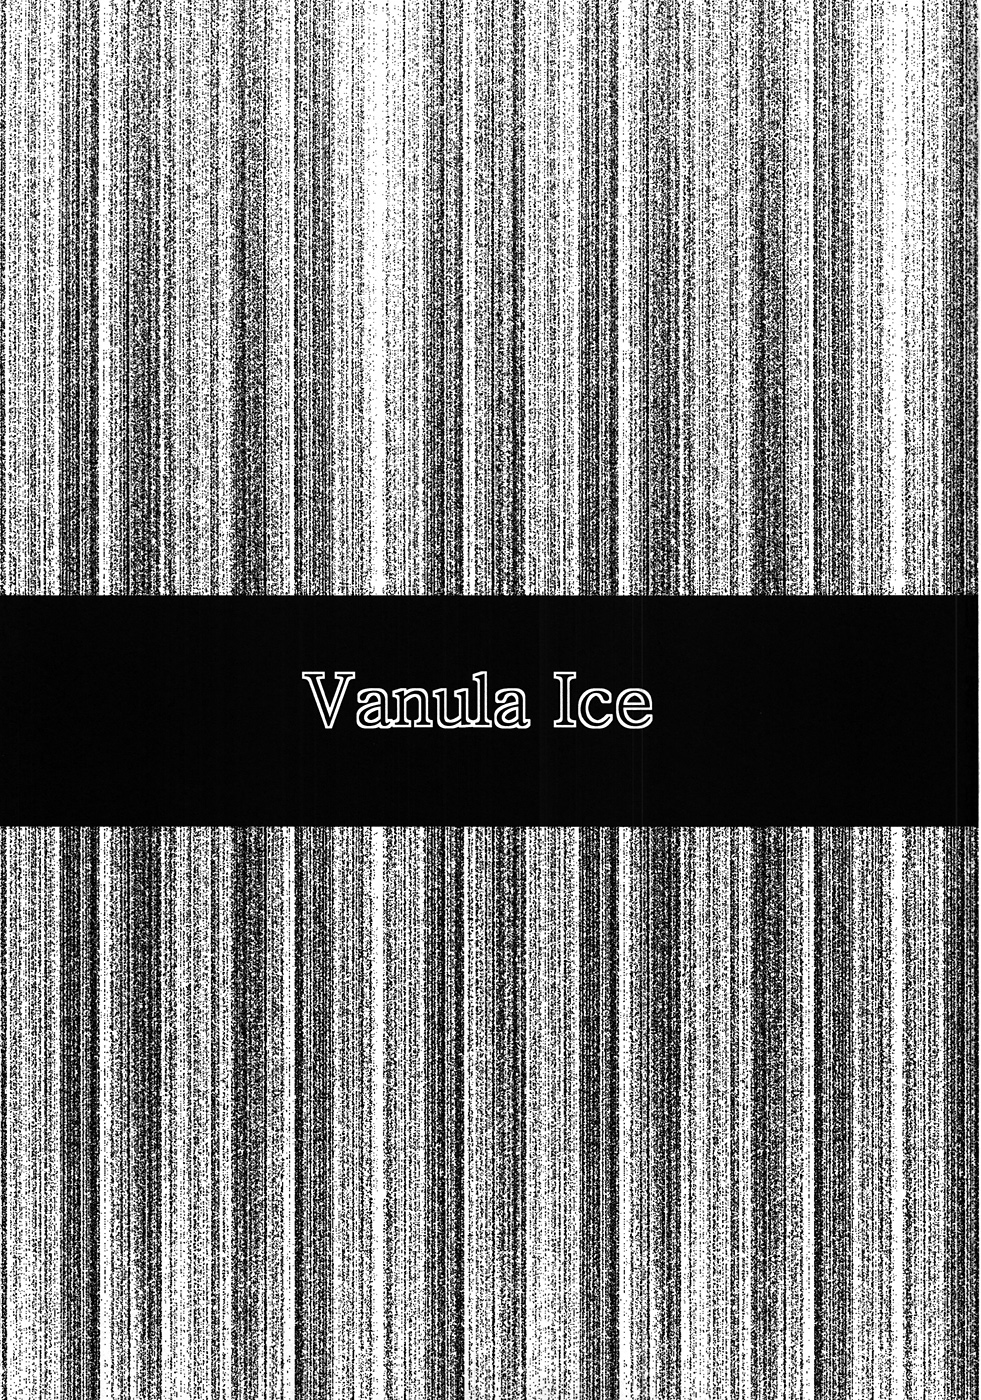 [さなづら同人誌発行所 (さなづらひろゆき)] ばにらあいす Vanula Ice (氷菓)